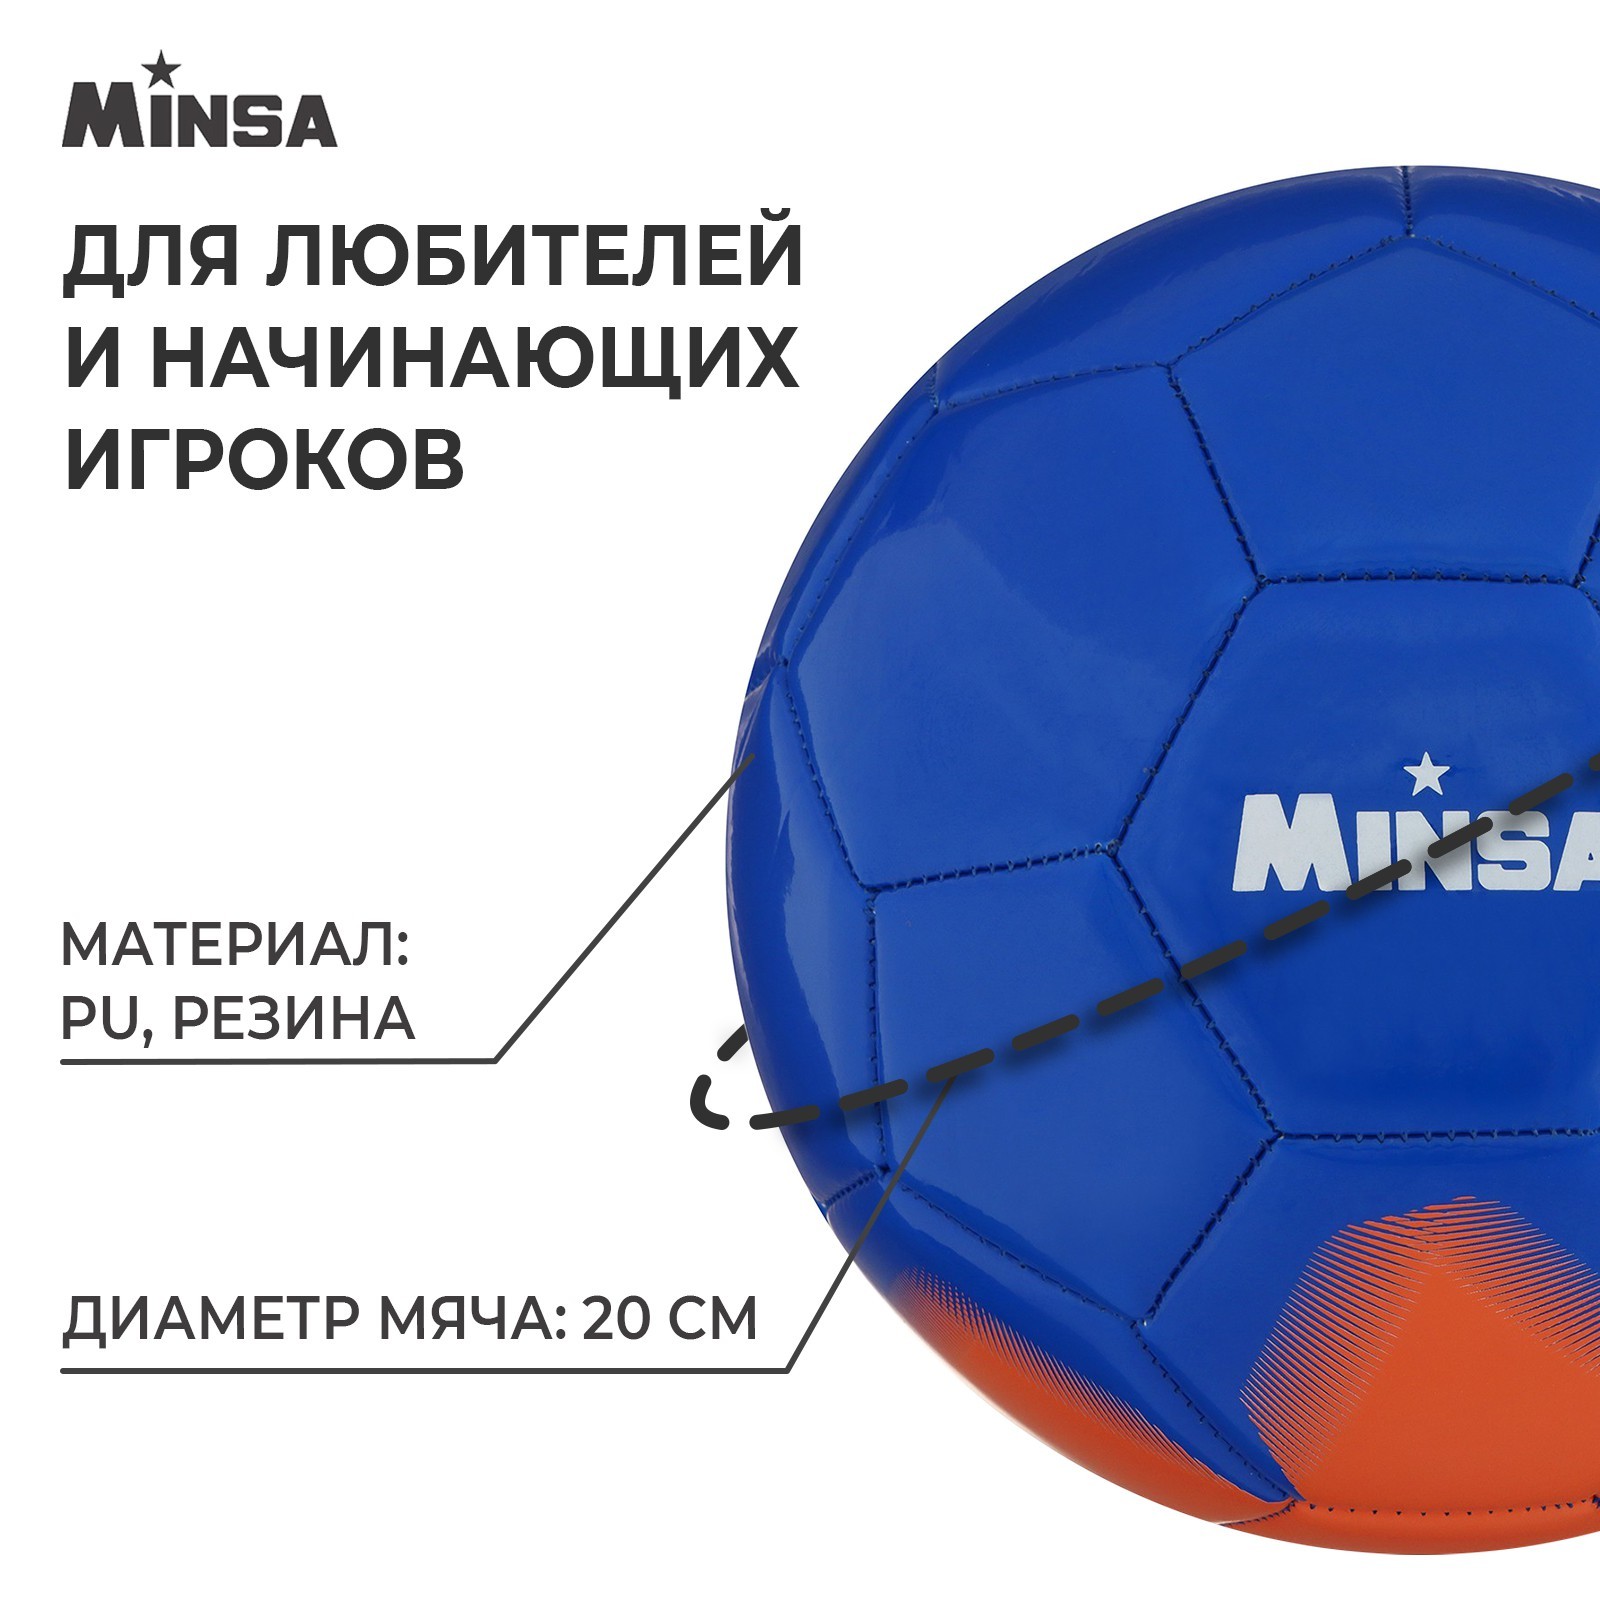 Мяч футбольный MINSA, PU, машинная сшивка, 32 панели, р. 5, 7393185 